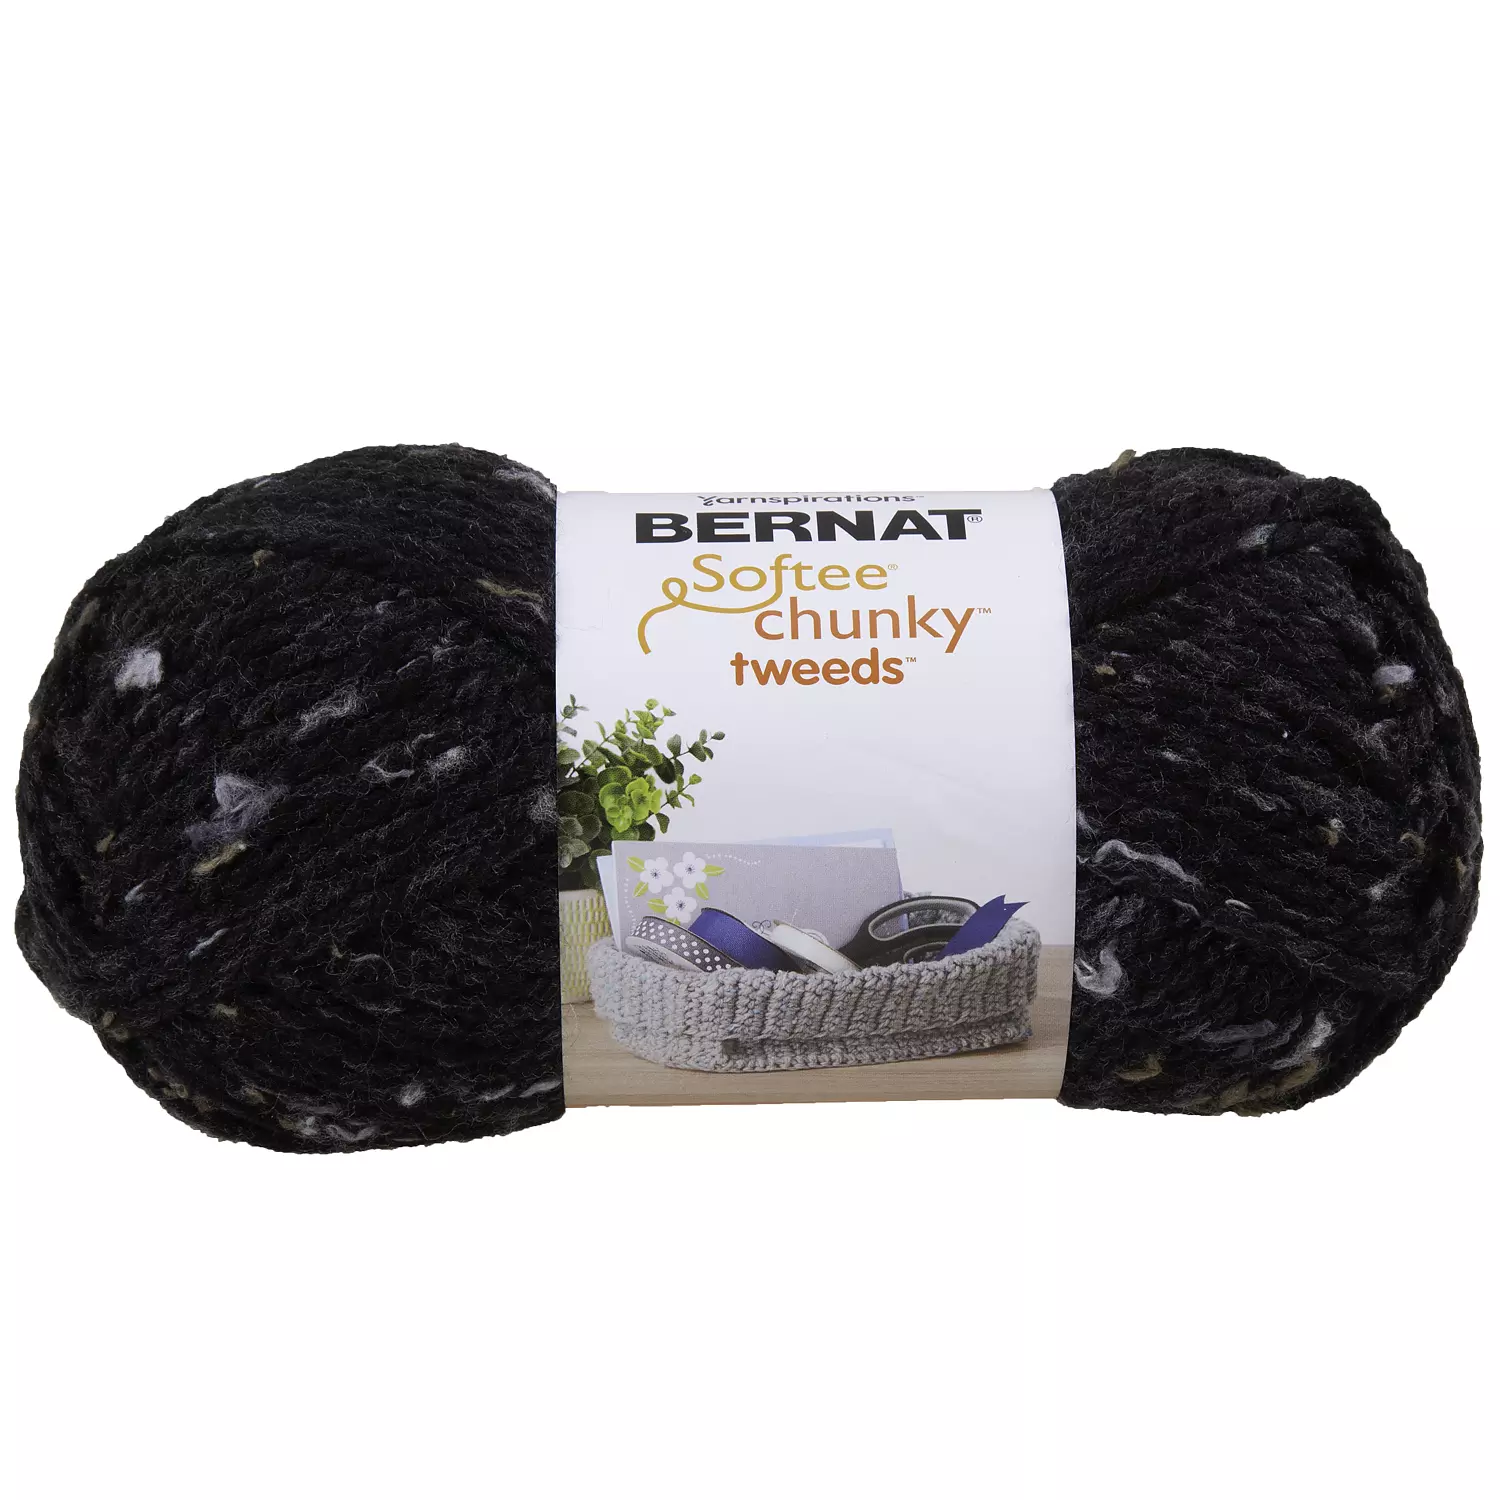 Bernat Softee Chunky Tweeds - Yarn, black tweed yarn